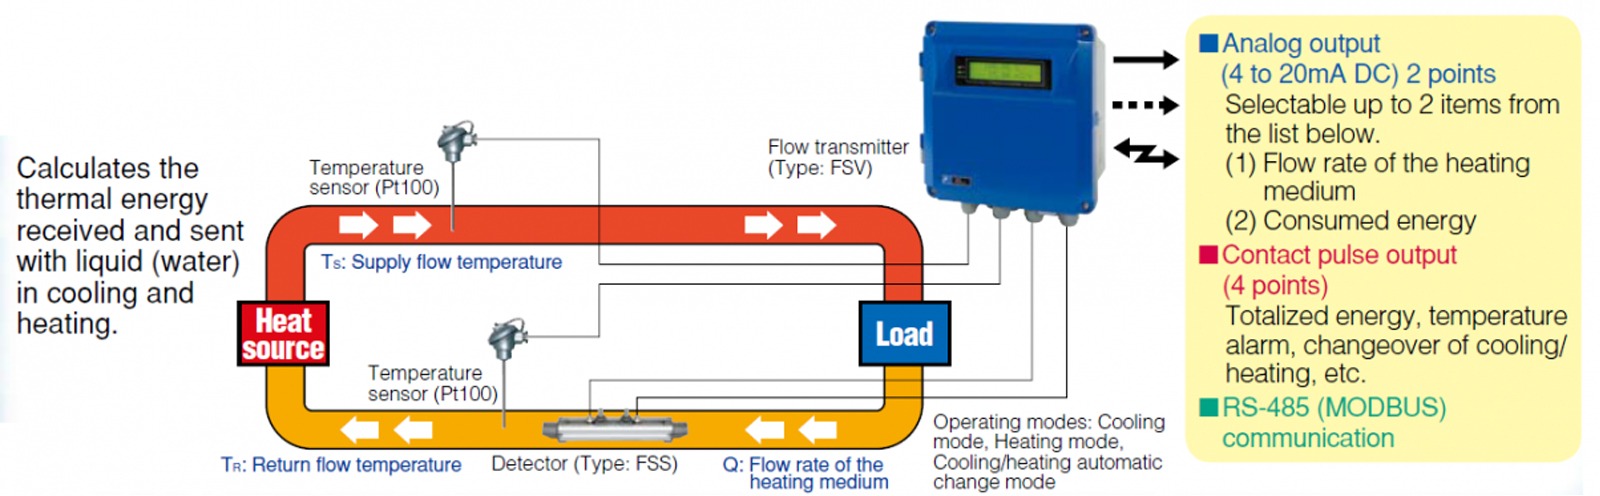 energy consumption measurement diagram